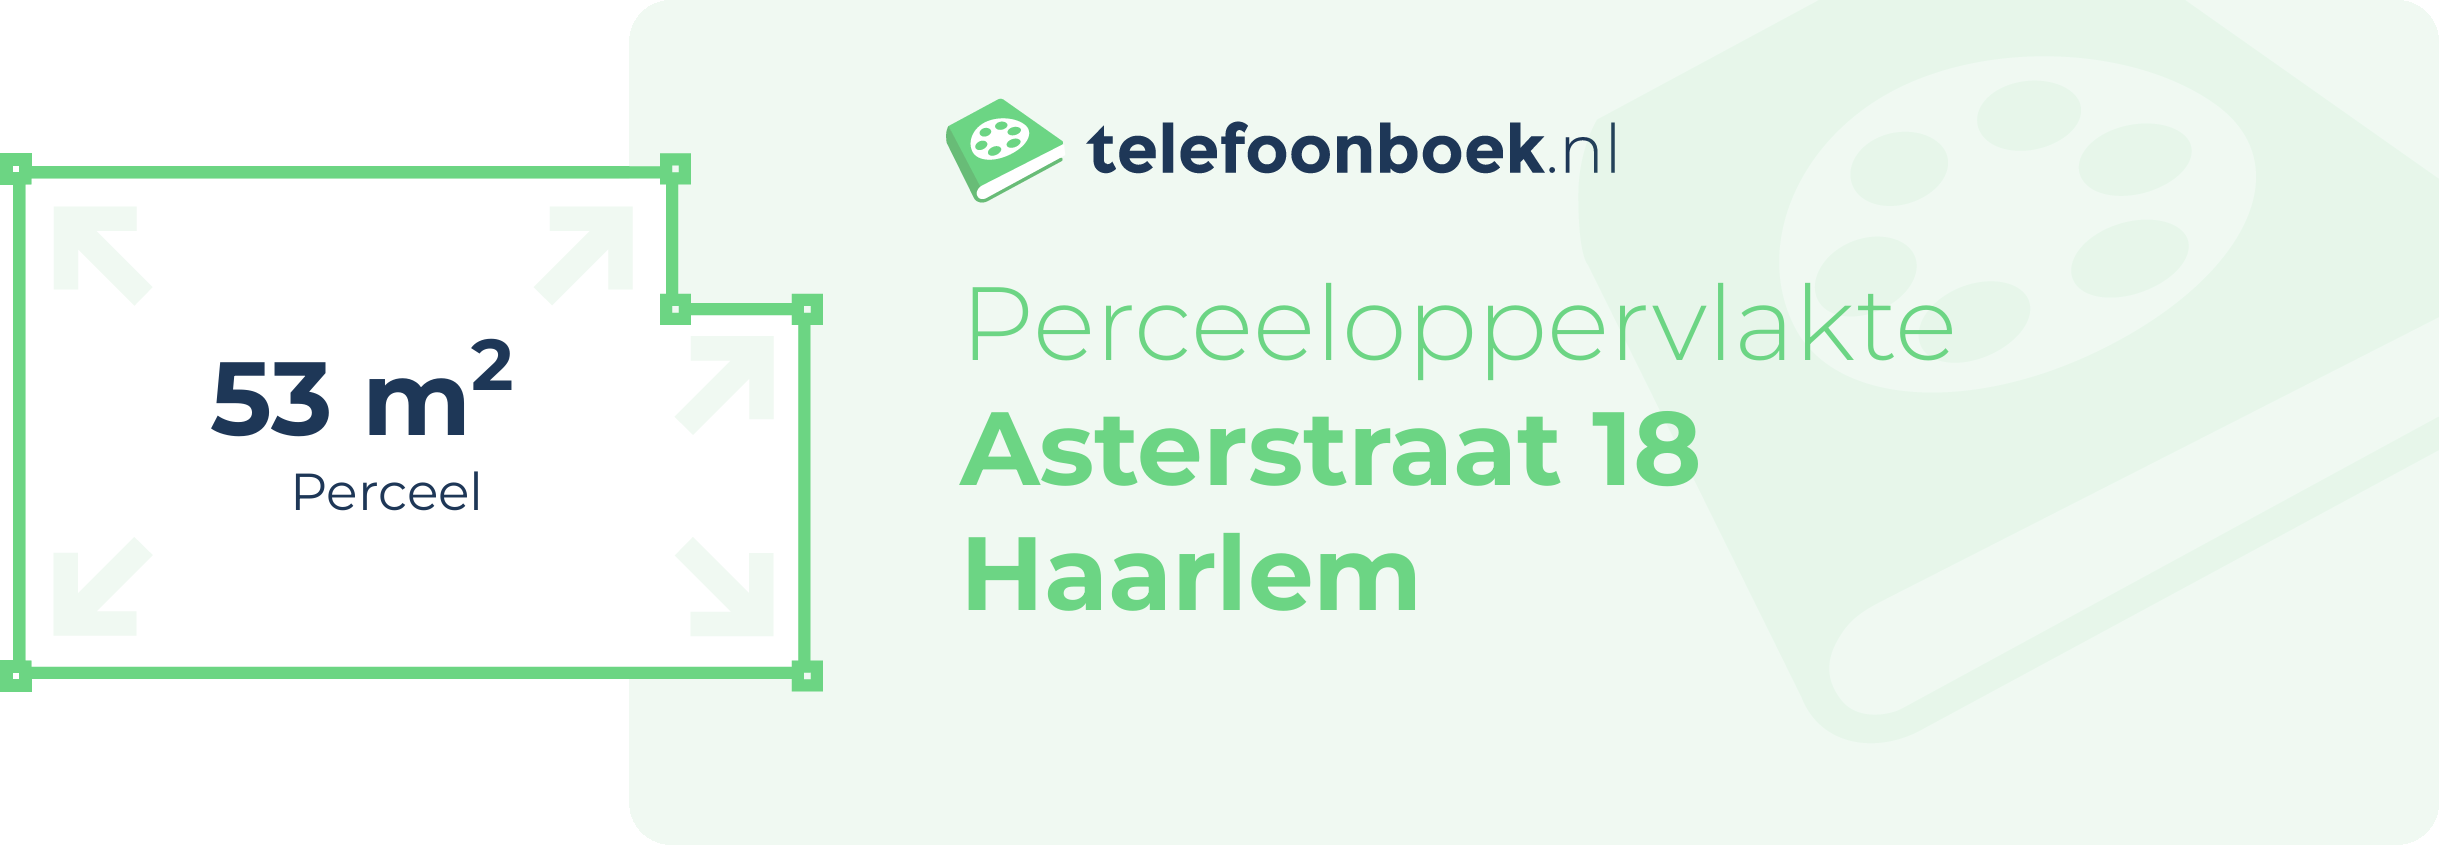 Perceeloppervlakte Asterstraat 18 Haarlem